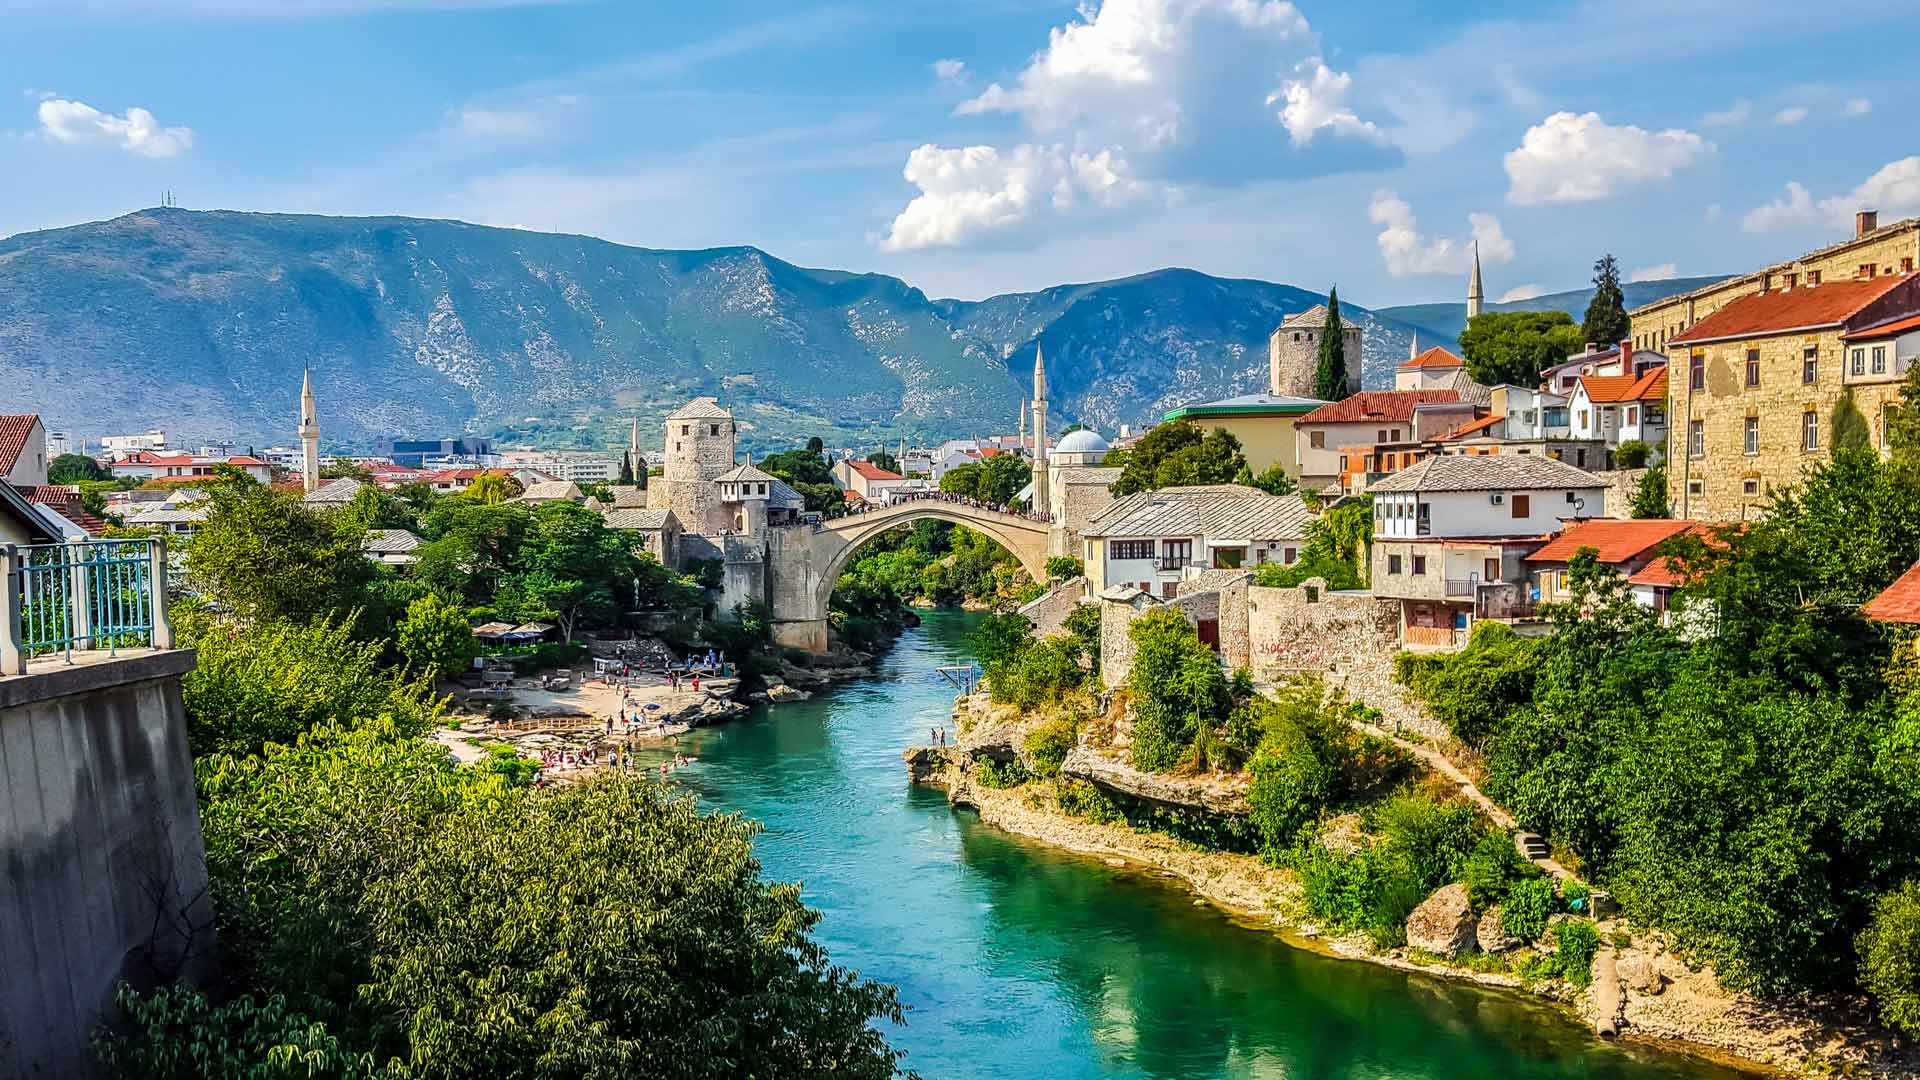 Vizesiz Balkan Turu Nasıl Yapılır? Gezilecek Yerler, Tavsiyeler ve Maliyetler, Vizesiz Balkan Turu rotası4